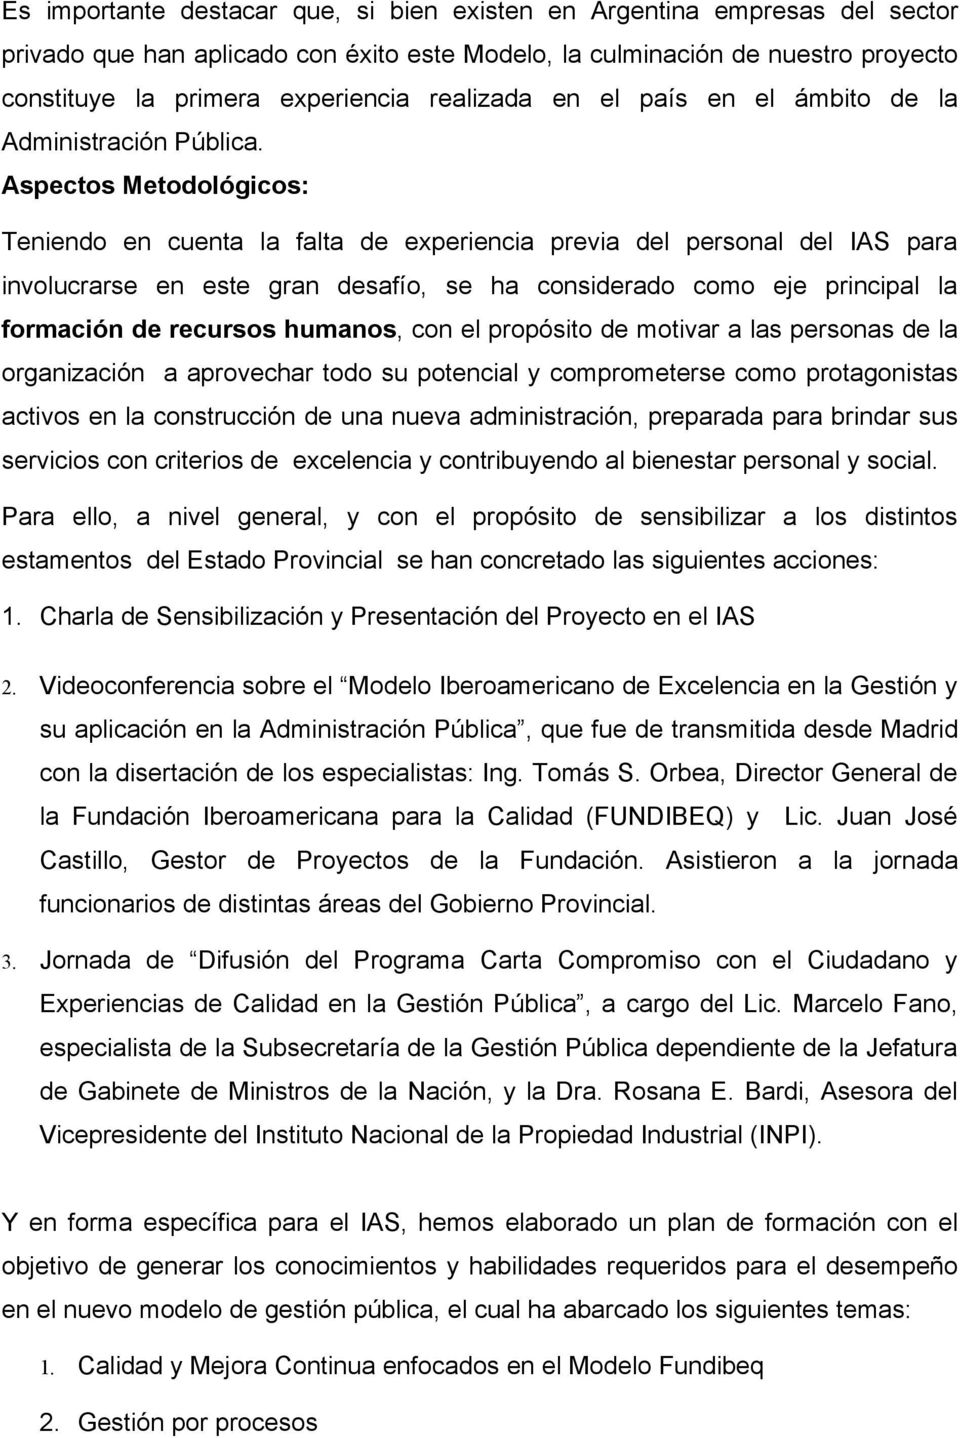 Aplicación del Modelo Iberoamericano de Excelencia en la Gestión en la  Administración Pública de la Provincia de Formosa - PDF Descargar libre